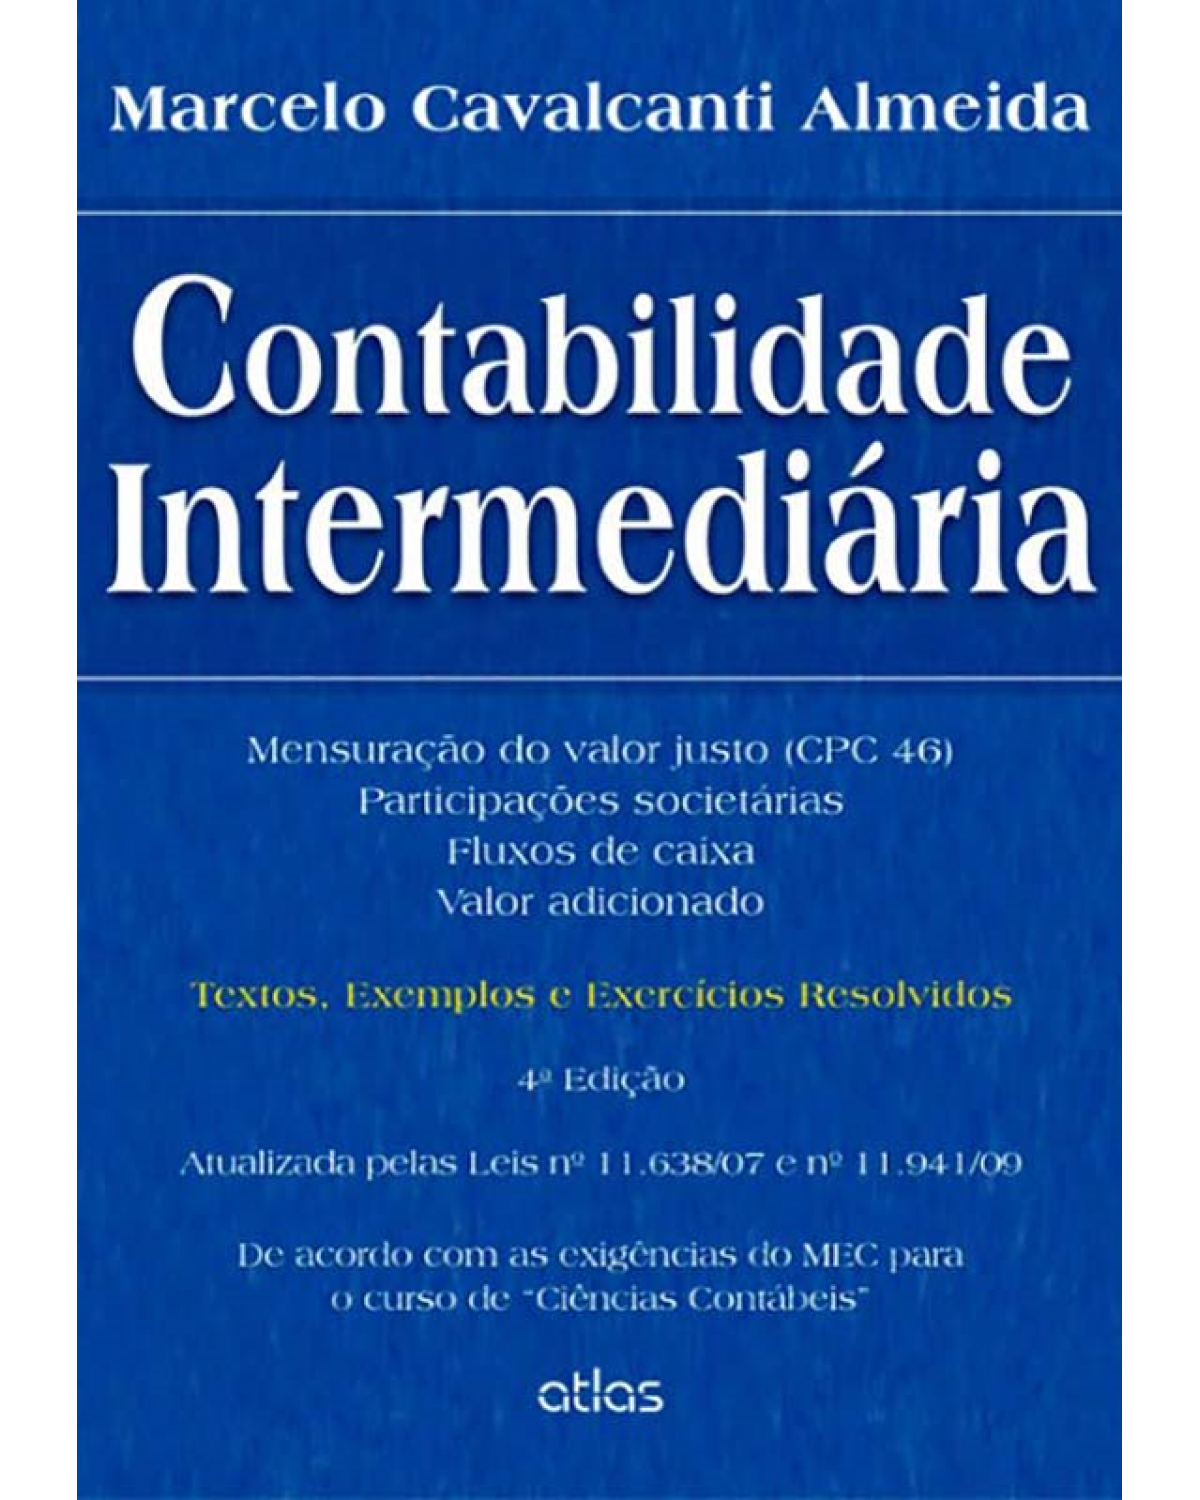 Contabilidade intermediária - Textos, exemplos e exercícios resolvidos - 4ª Edição | 2013